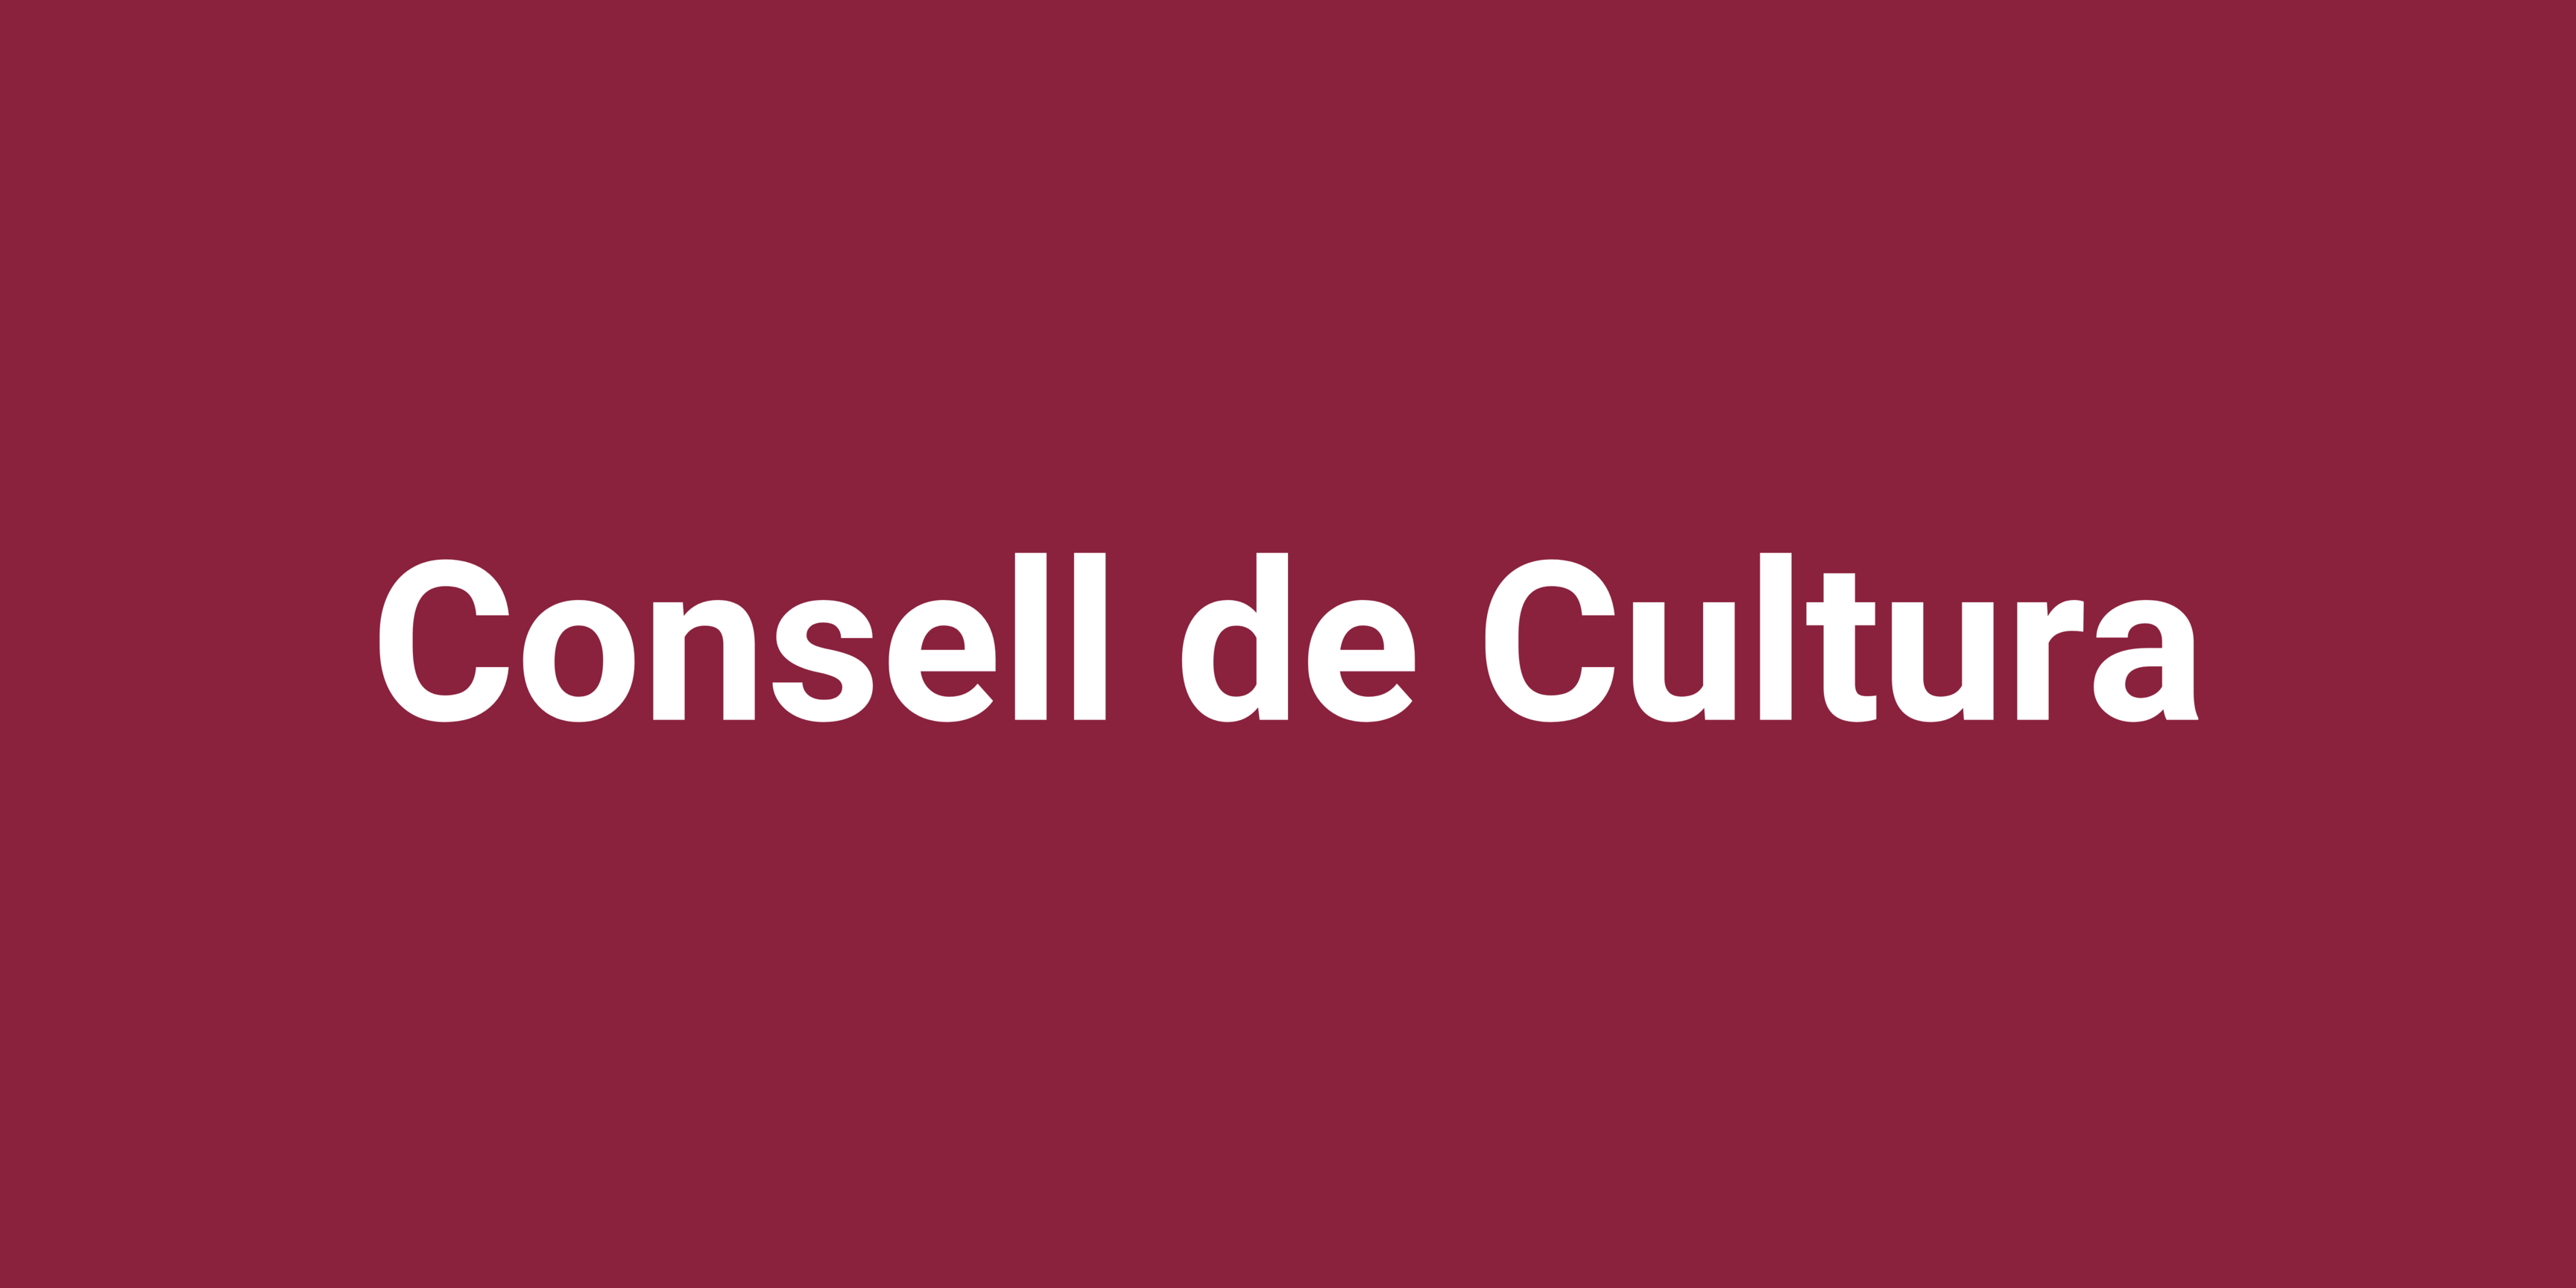 Consell de Cultura